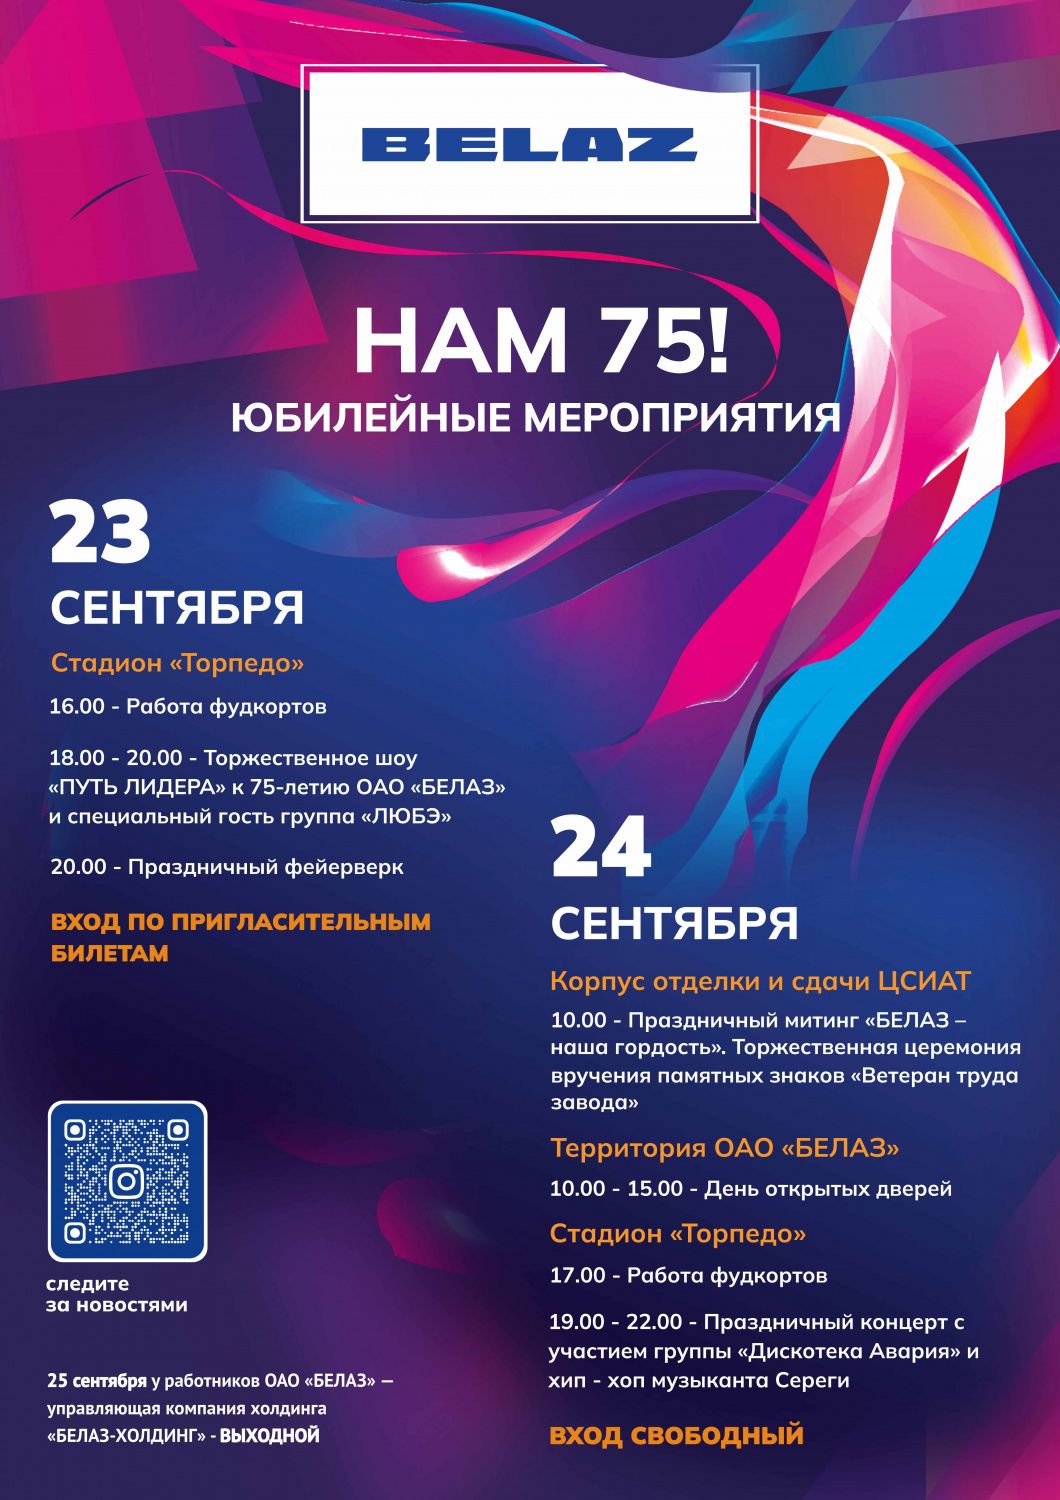 На заводе БЕЛАЗ состоится праздник в честь юбилея.